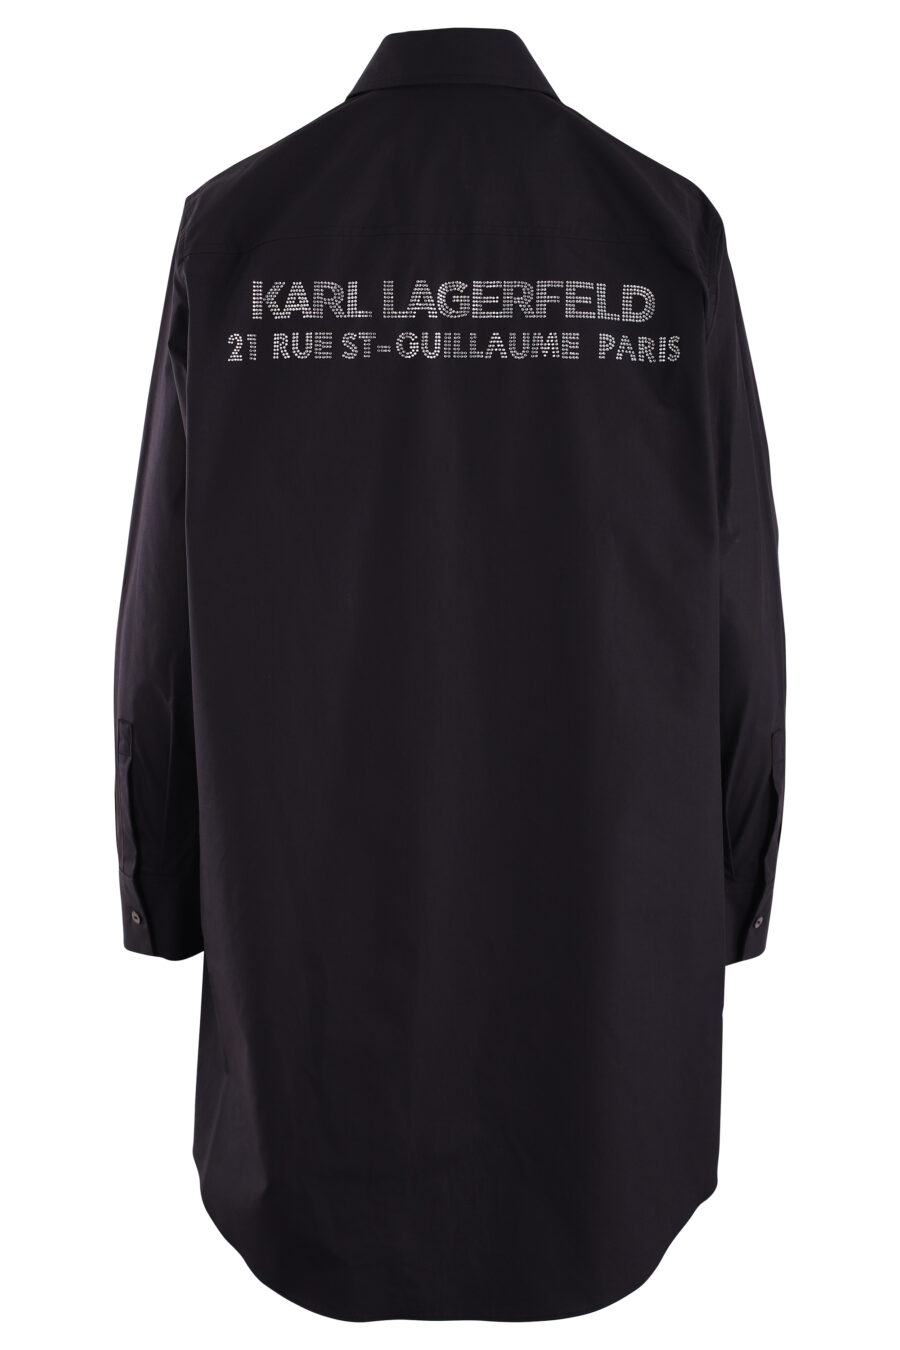 Langes schwarzes Hemd mit Strass-Logo - IMG 3084